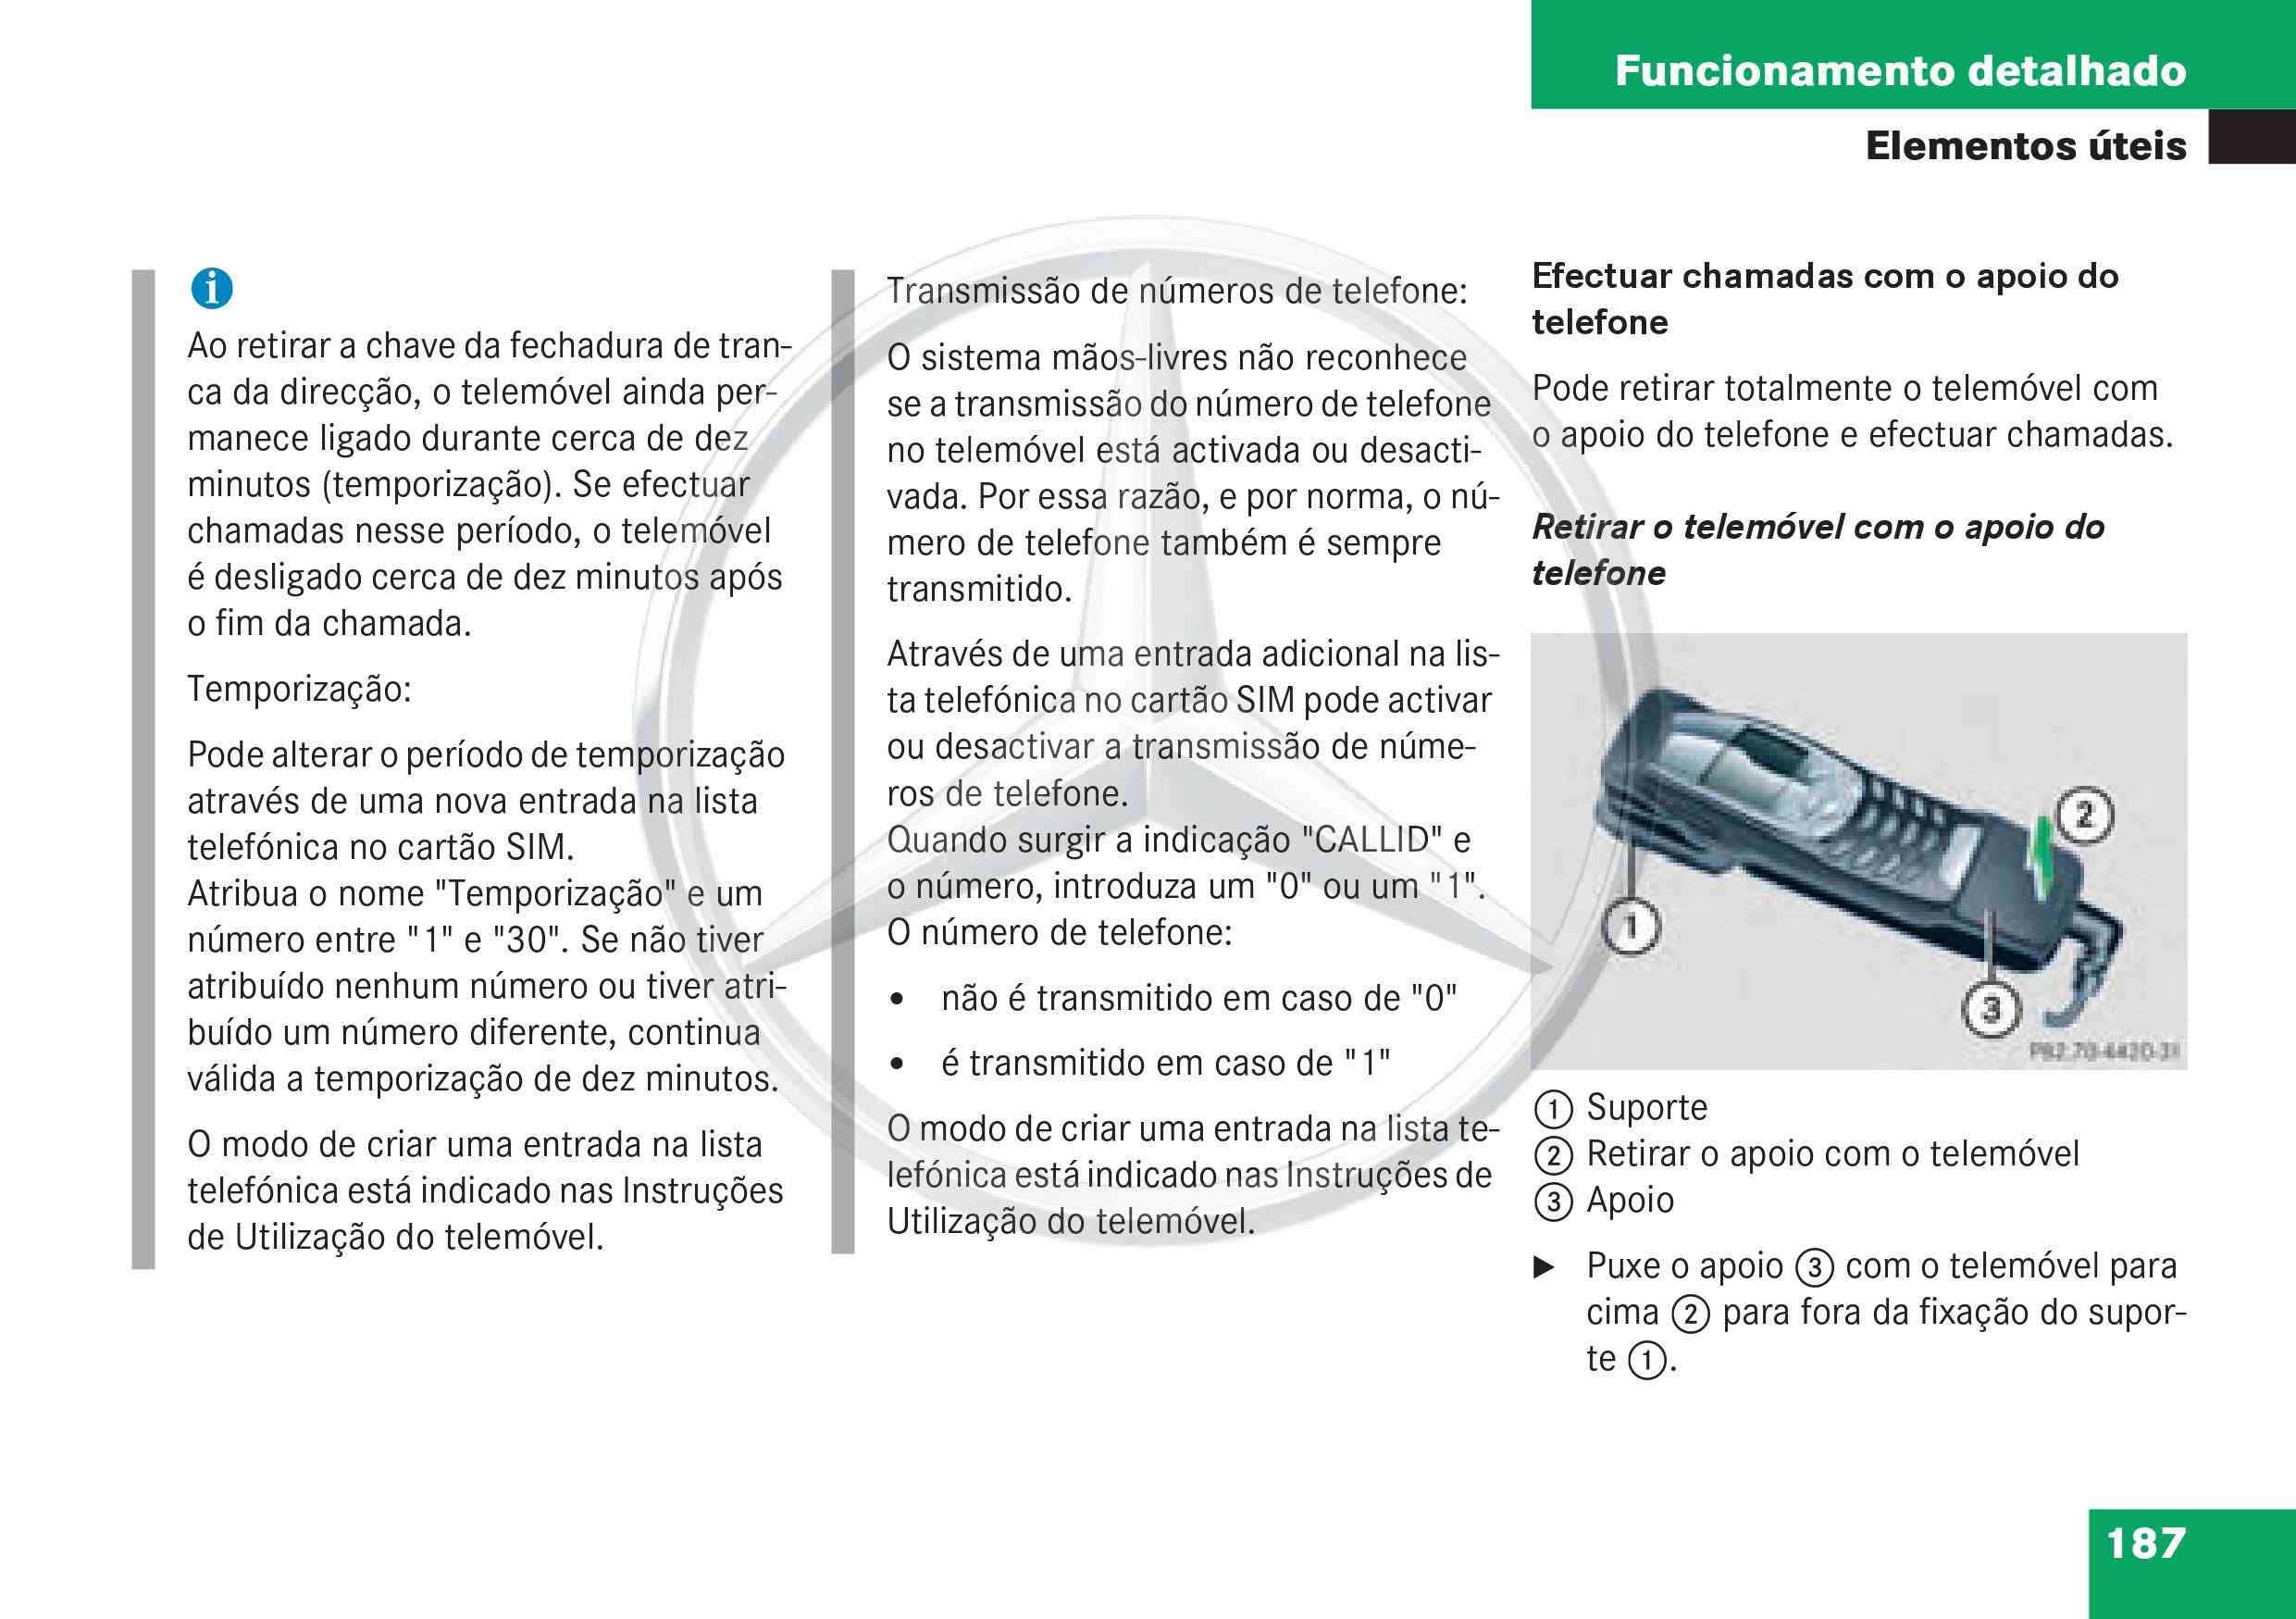 manual - (W168): Manual Classe A - português de Portugal 018910